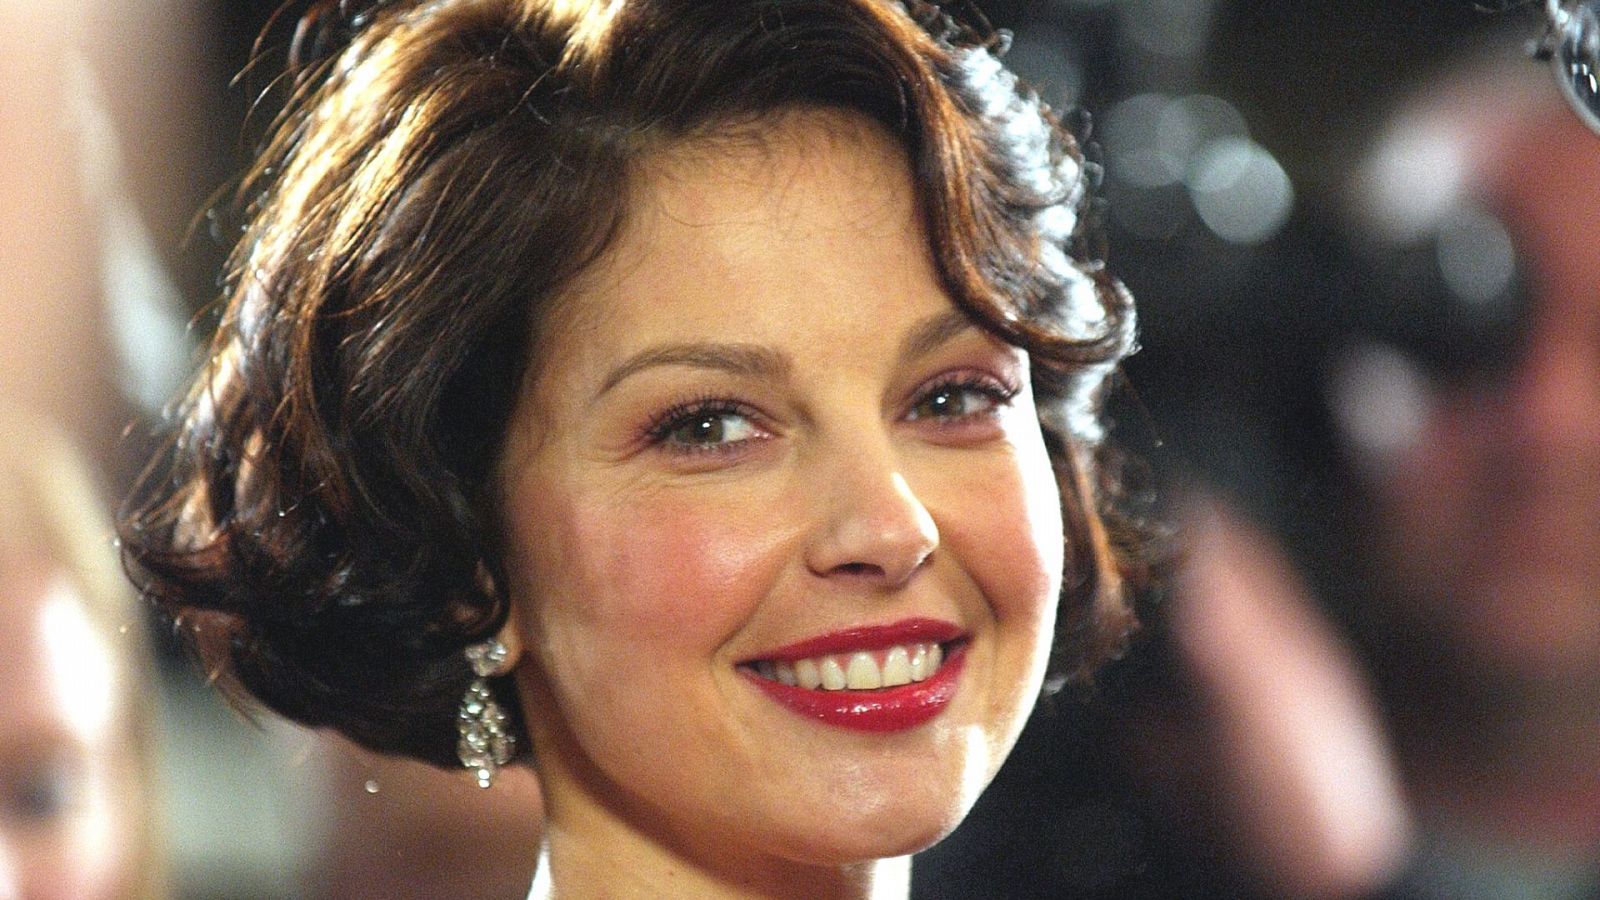 La actriz Ashley Judd, conocida por 'El coleccionista de amantes' o 'Doble traición'